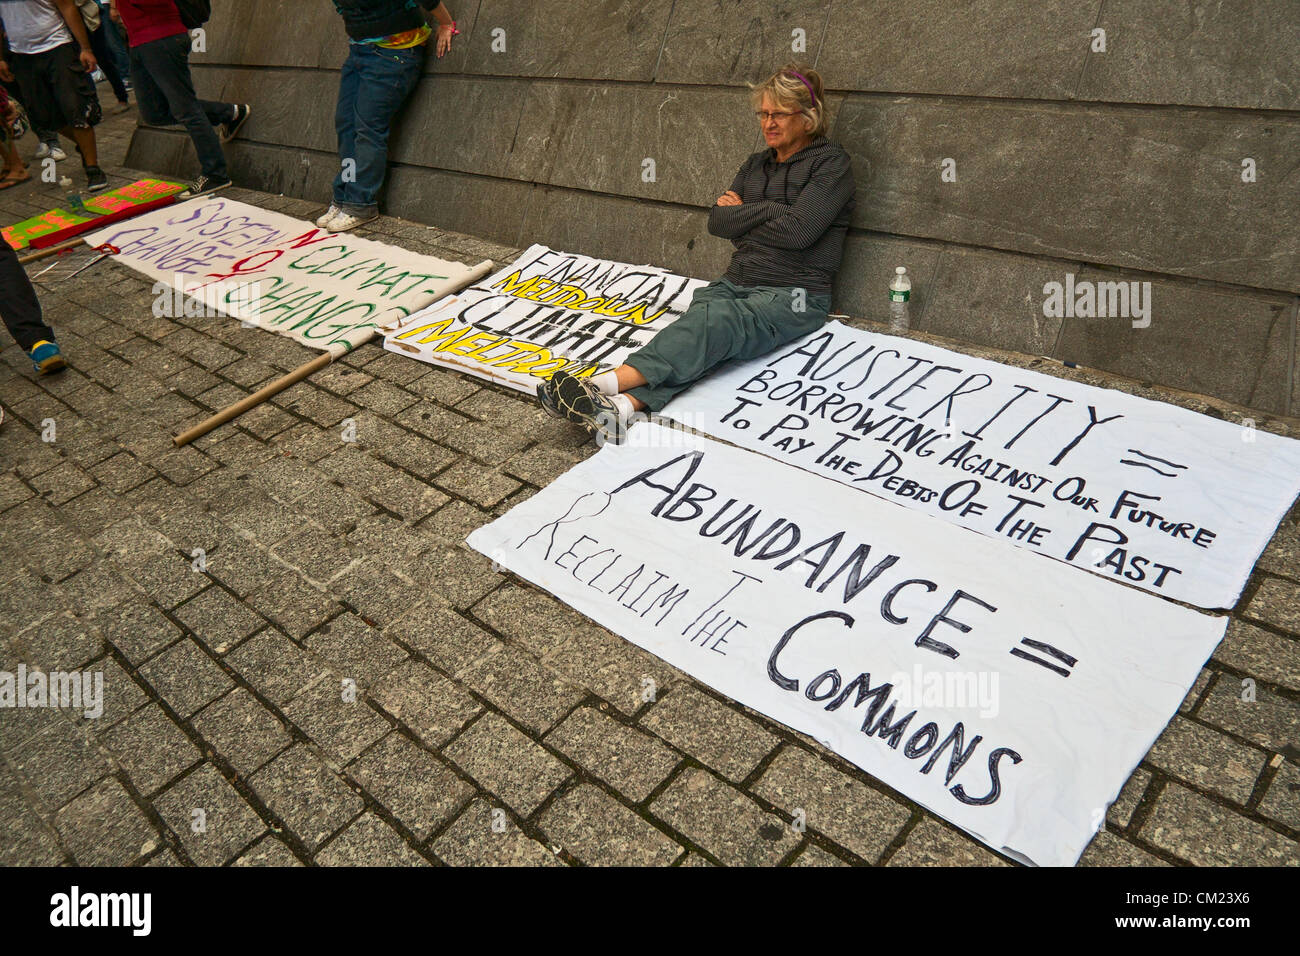 Nueva York, NY, 17 de septiembre de 2012. En el primer aniversario de las protestas Occupy Wall Street, mujer sentada por firmar criticando la austeridad movimiento Foto de stock